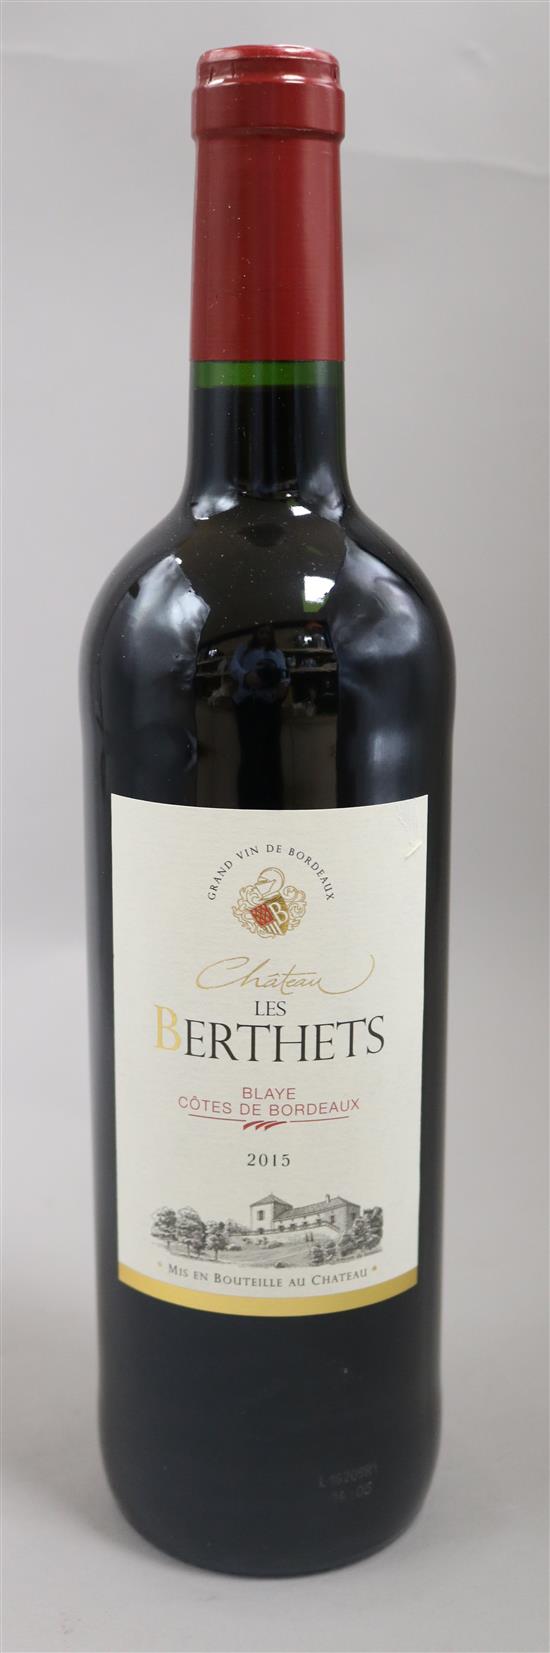 Five bottles of Chateau Les Berthets 2015